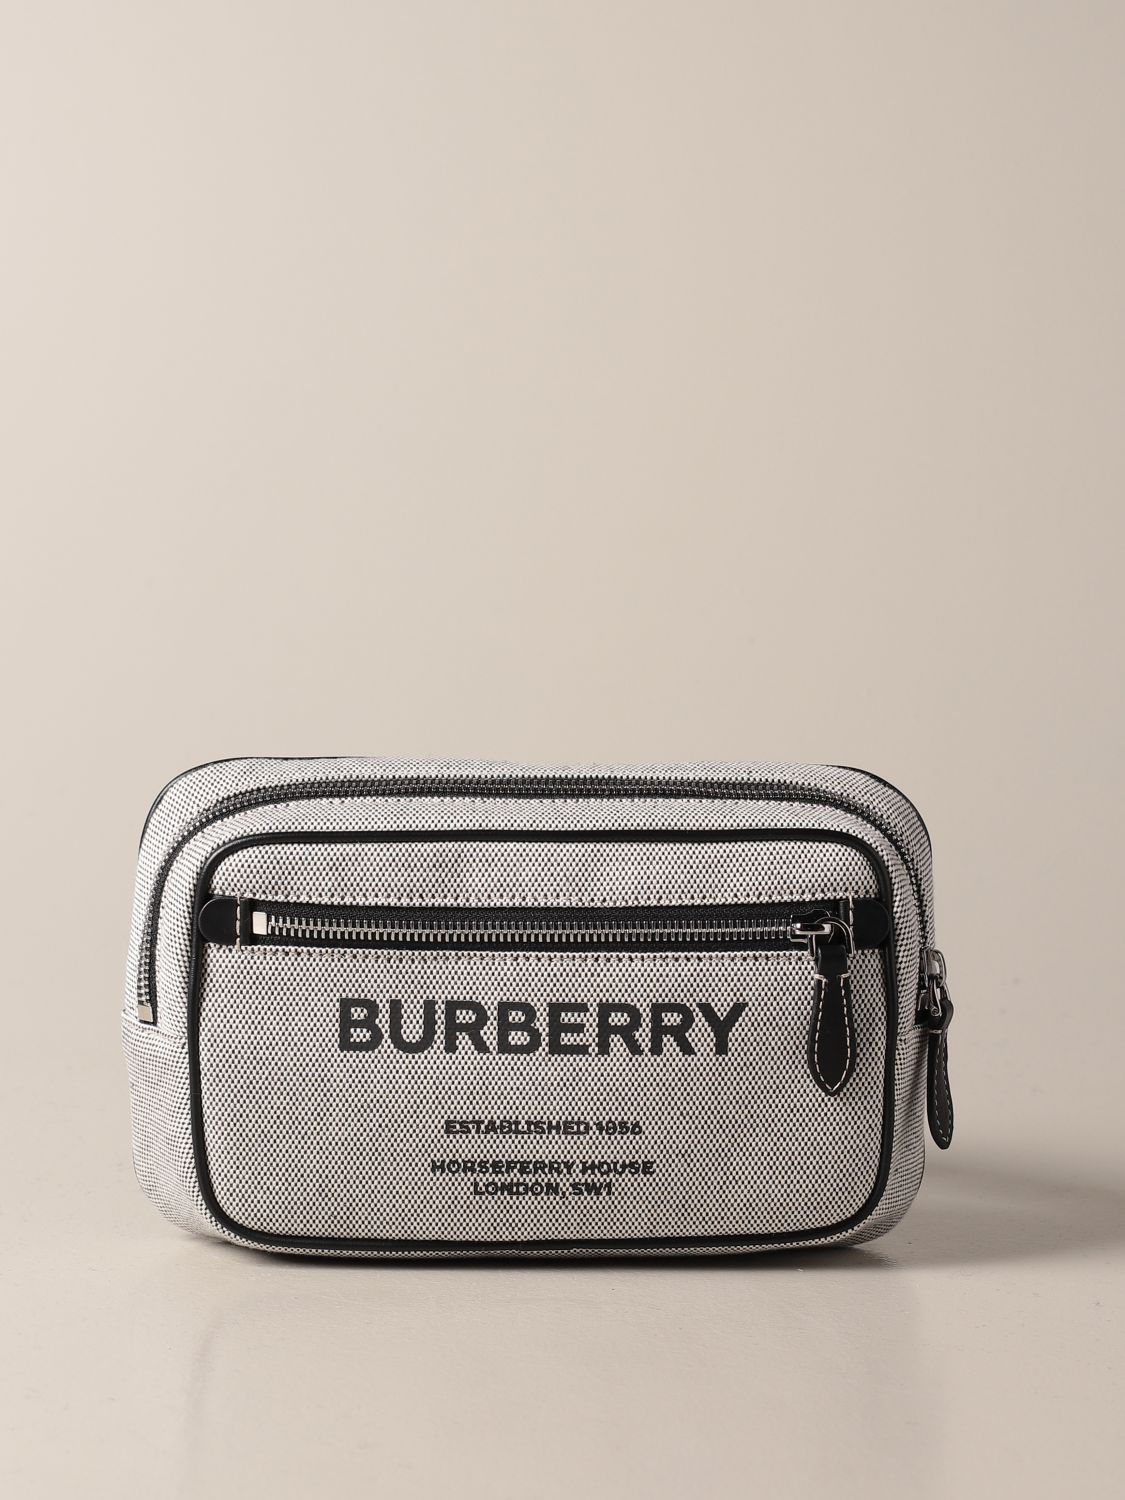 QC Ferragamo and Burberry belt : r/DesignerReps